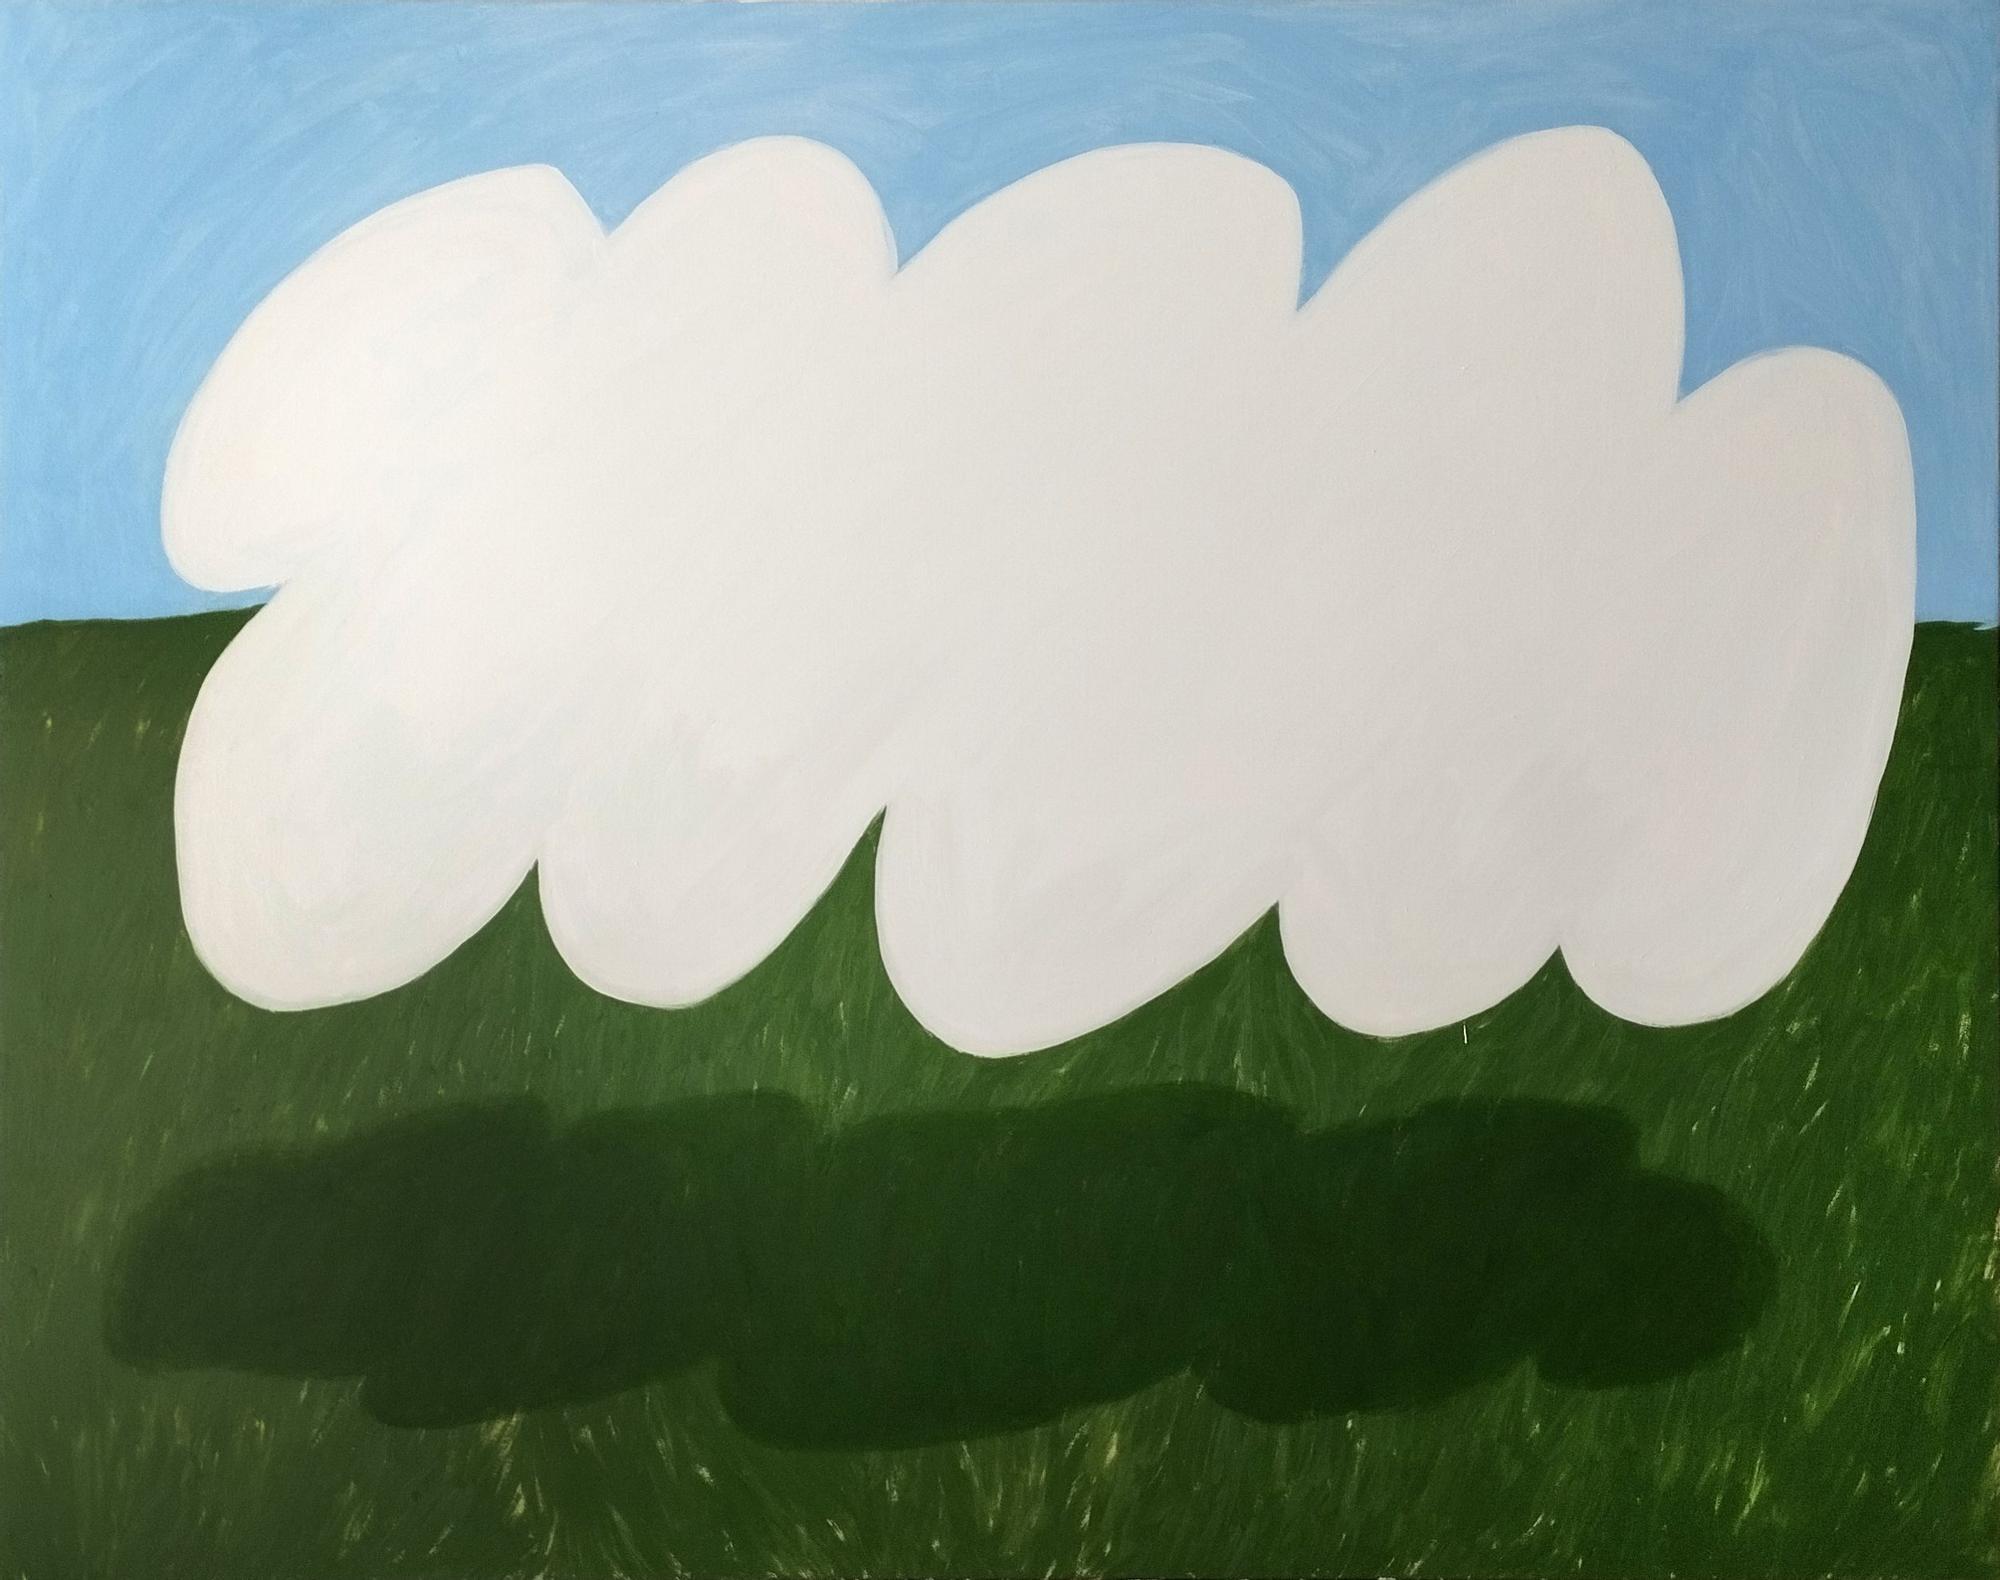 &#039;Cuando se levantan las nubes salen las sombras. Óleo sobre lienzo&#039;, de Gema Quiles.